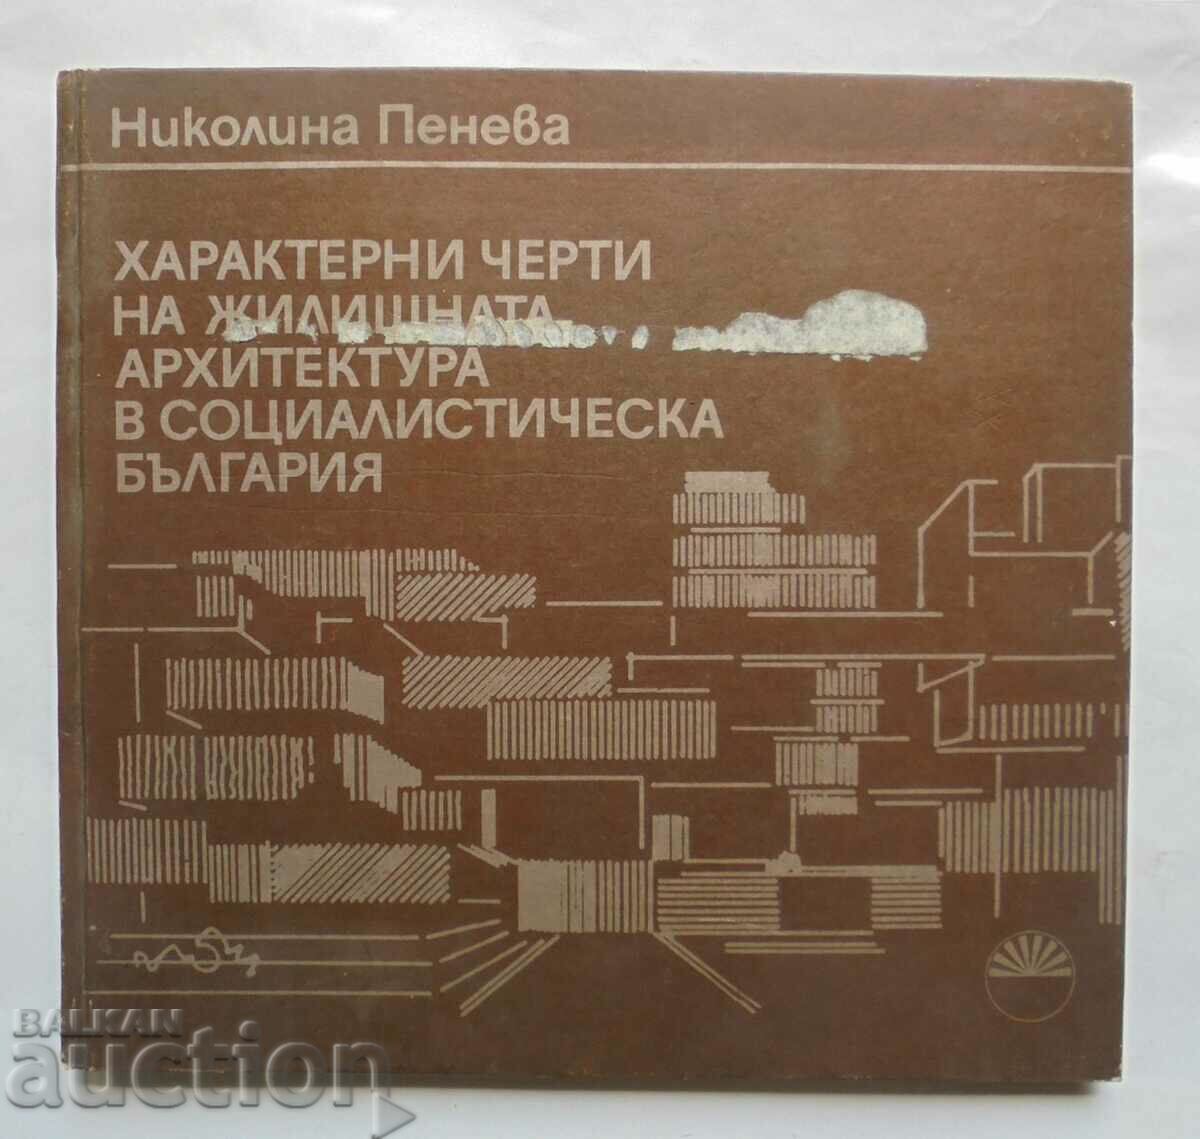 αρχιτεκτονική στη σοσιαλιστική Βουλγαρία Nikolina Peneva 1986